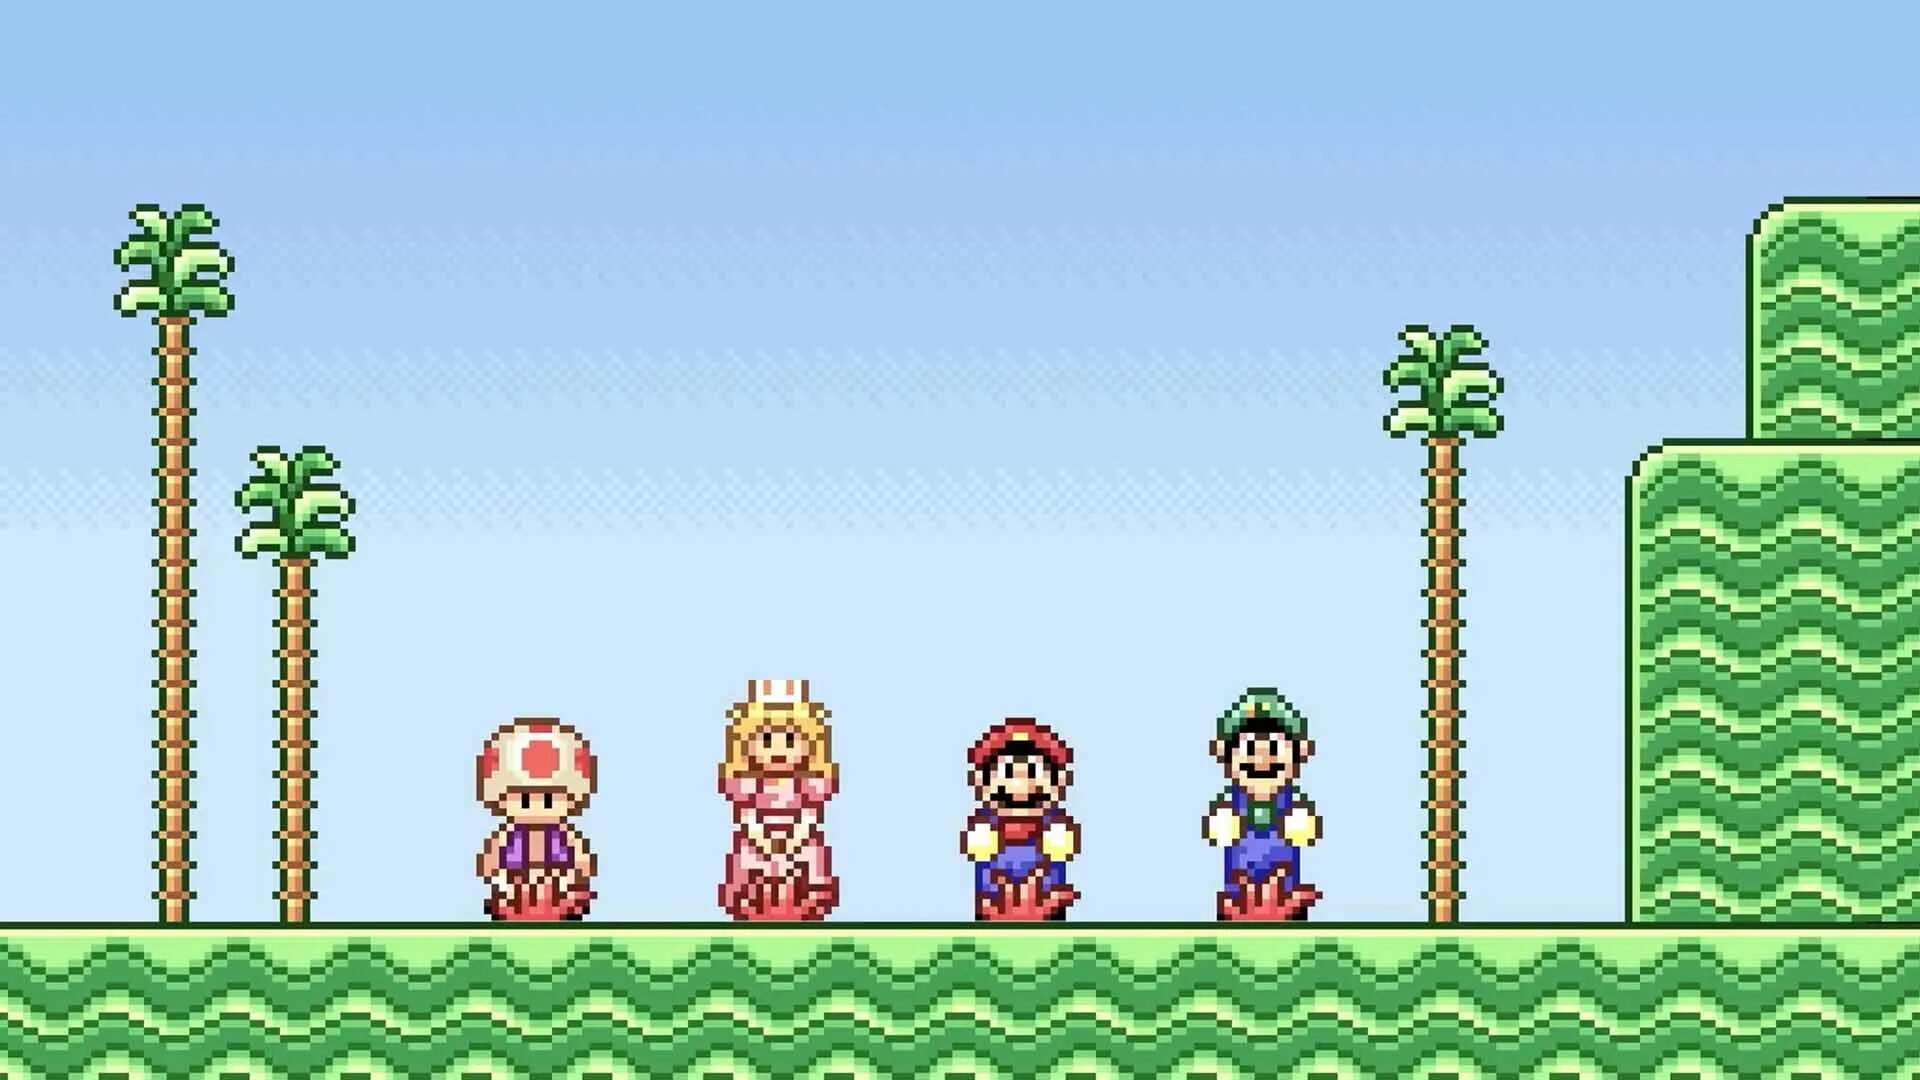 Mario bros advance. Super Mario Advance 2 GBA. Super Mario World super Mario Advance 2. Super Mario World 2 GBA. Super Mario Bros Advance.